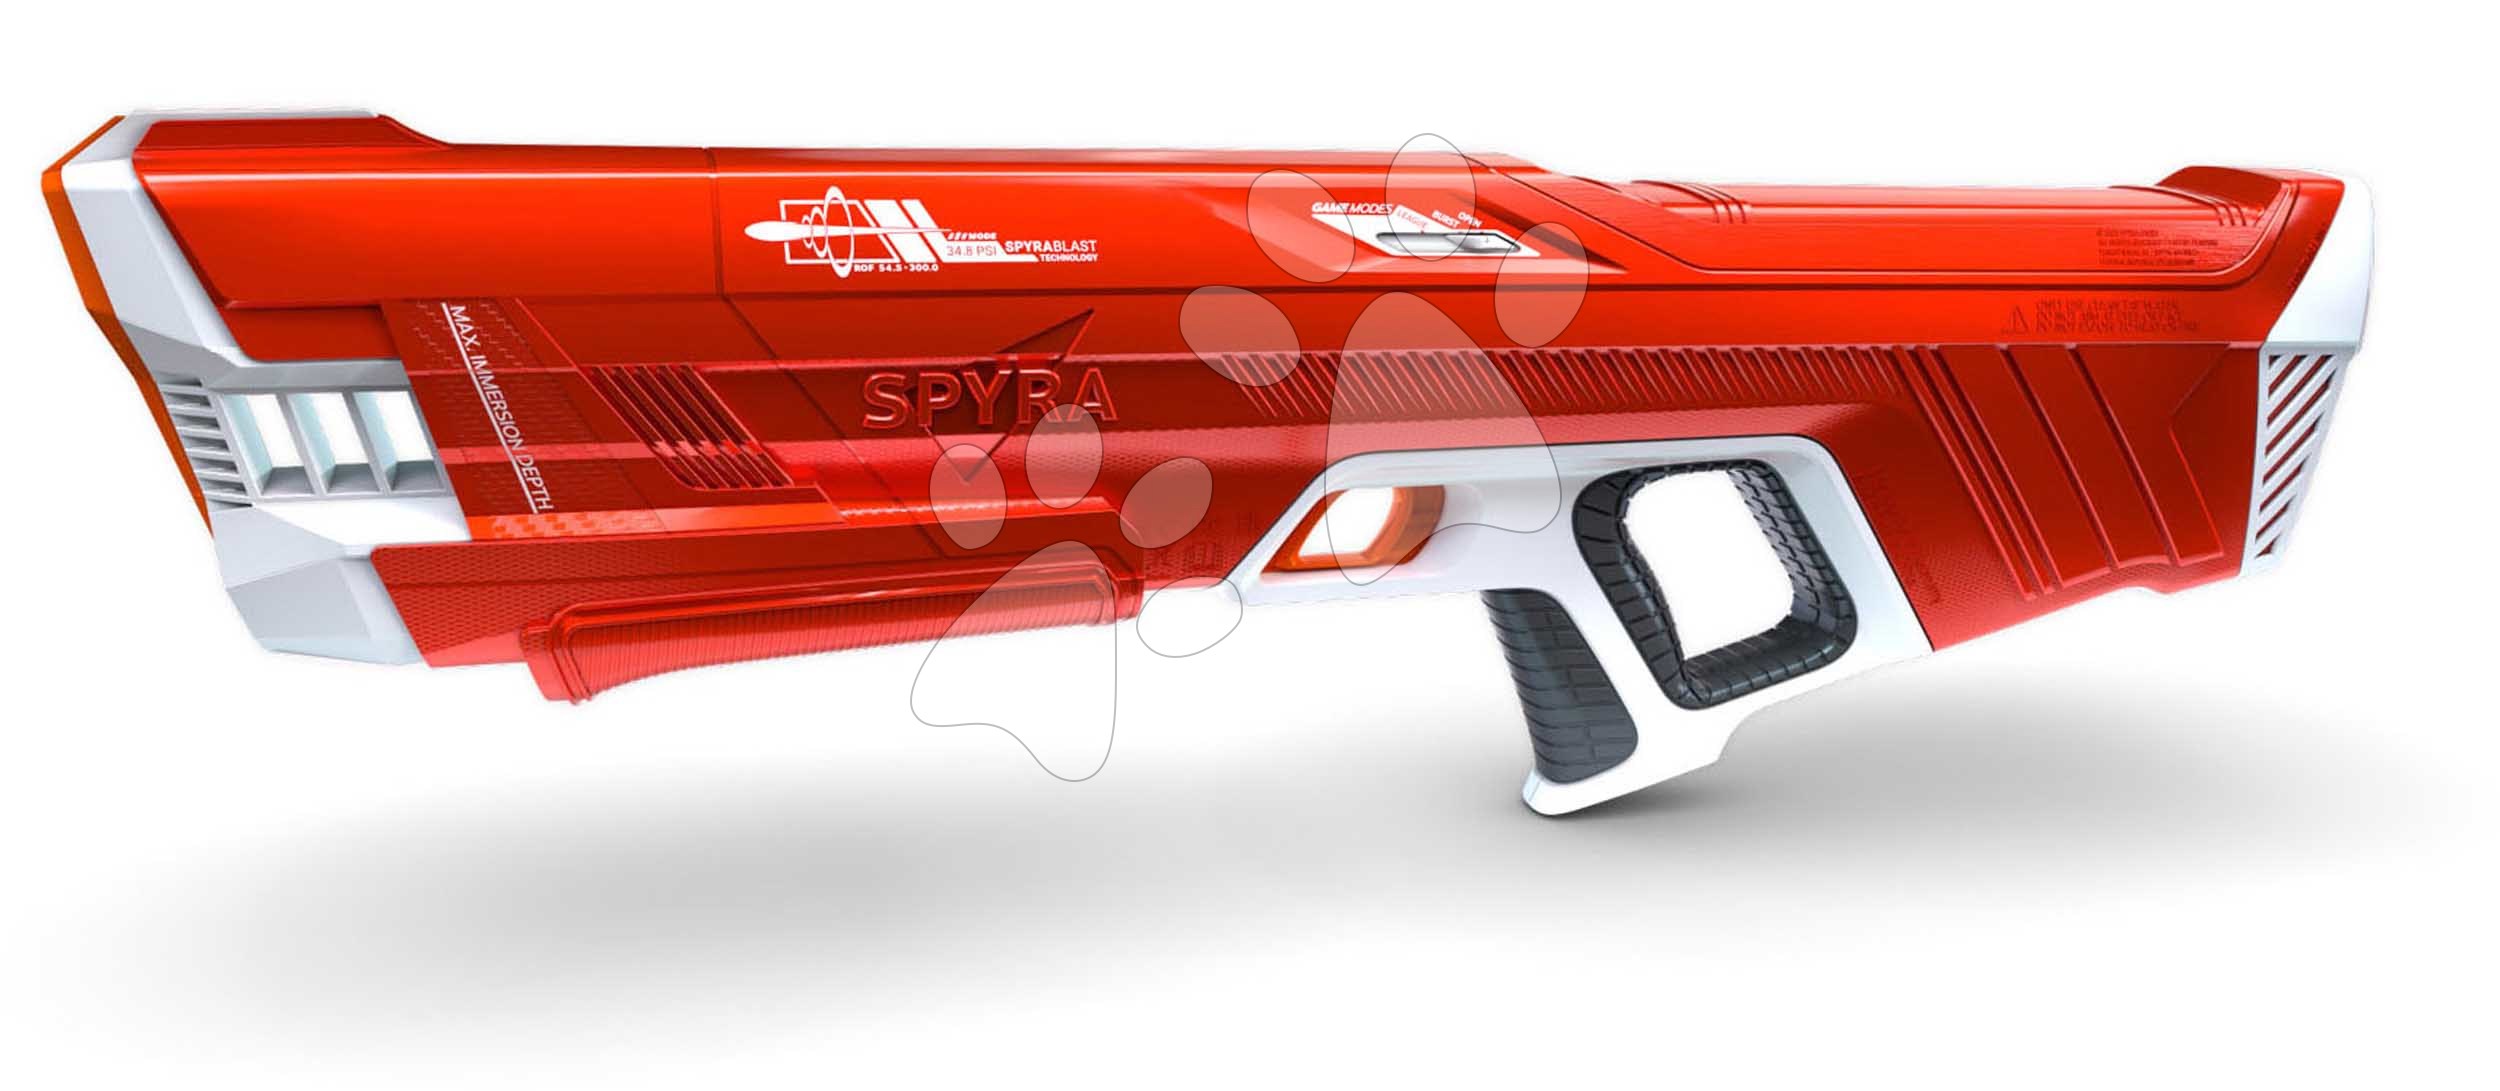 E-shop Vodná pištoľ plne elektronická s automatickým nabíjaním vodou SpyraThree Red Spyra s elektronickým digitálnym displejom a 3 režimy streľby s dostrelom 15 metrov červená od 14 rokov